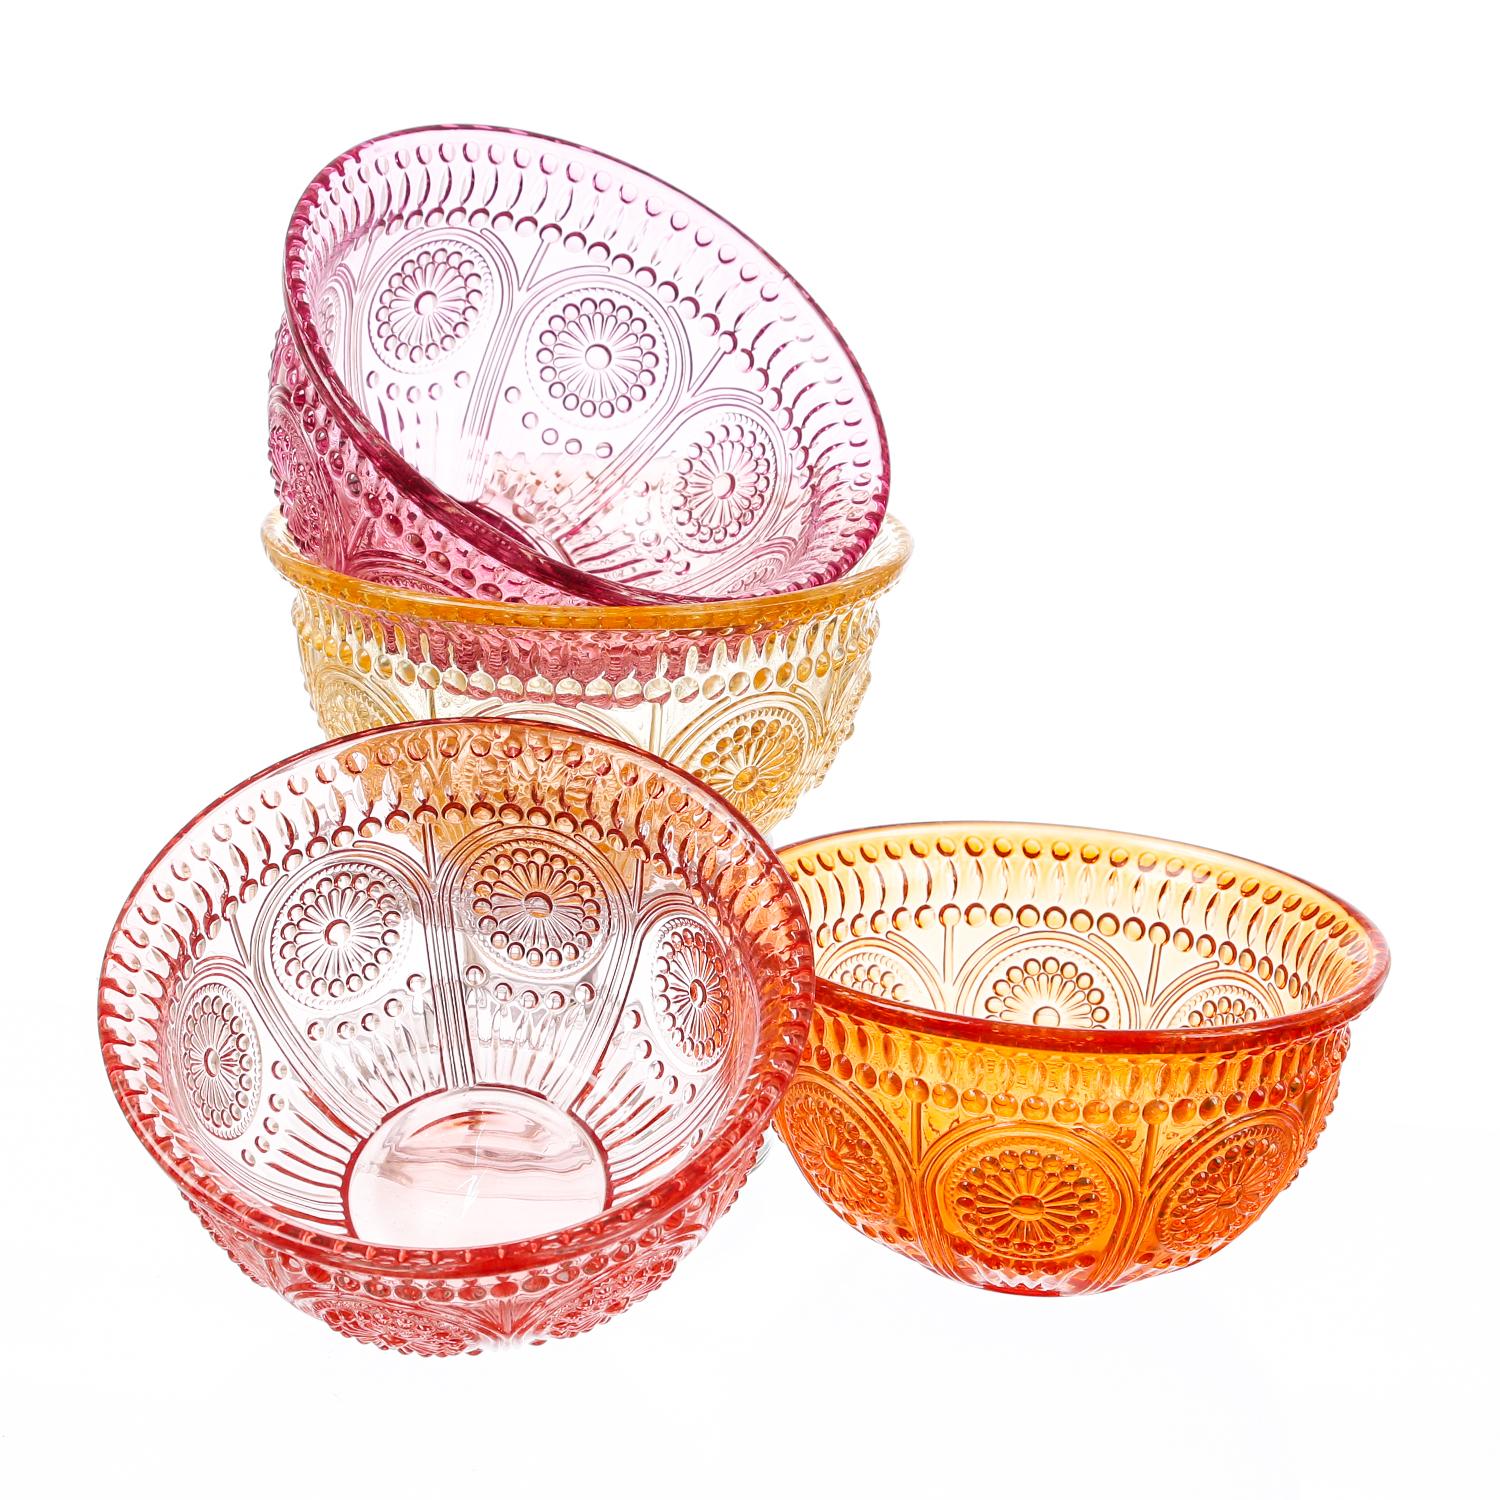 Glasschale Vintage mit Blumenmuster - Dessert/Snack Schüssel - D: 12,7cm - 210ml - Boho Stil - rosa